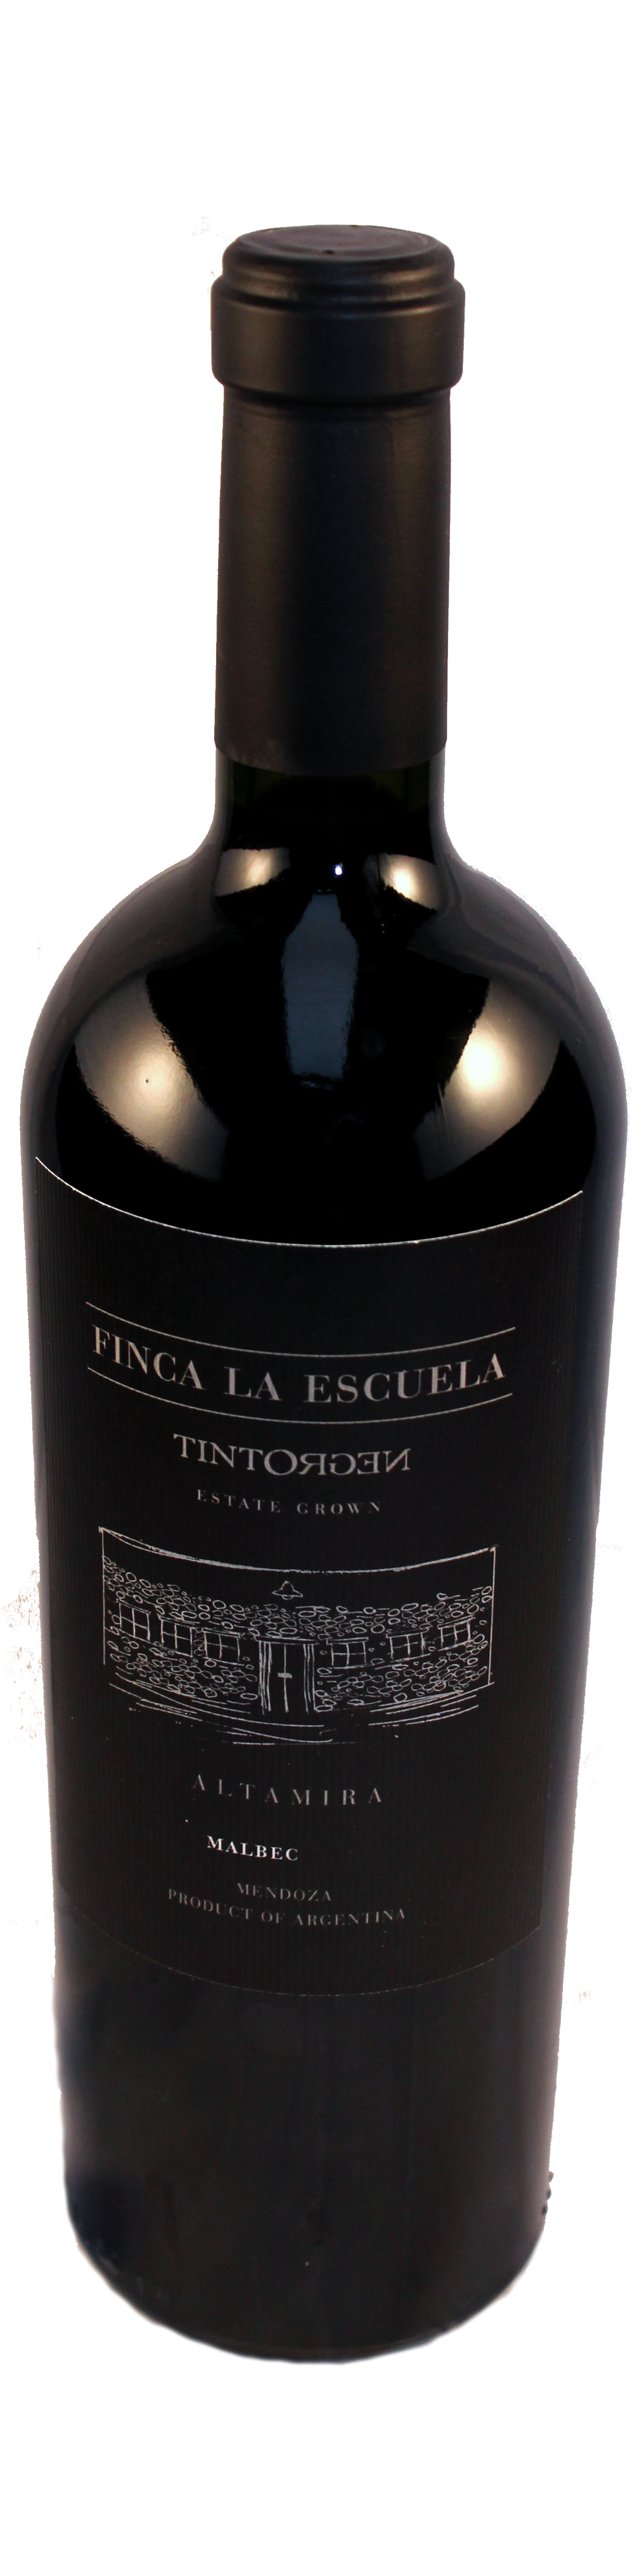 Bottle shot of 2011 Finca La Escuela